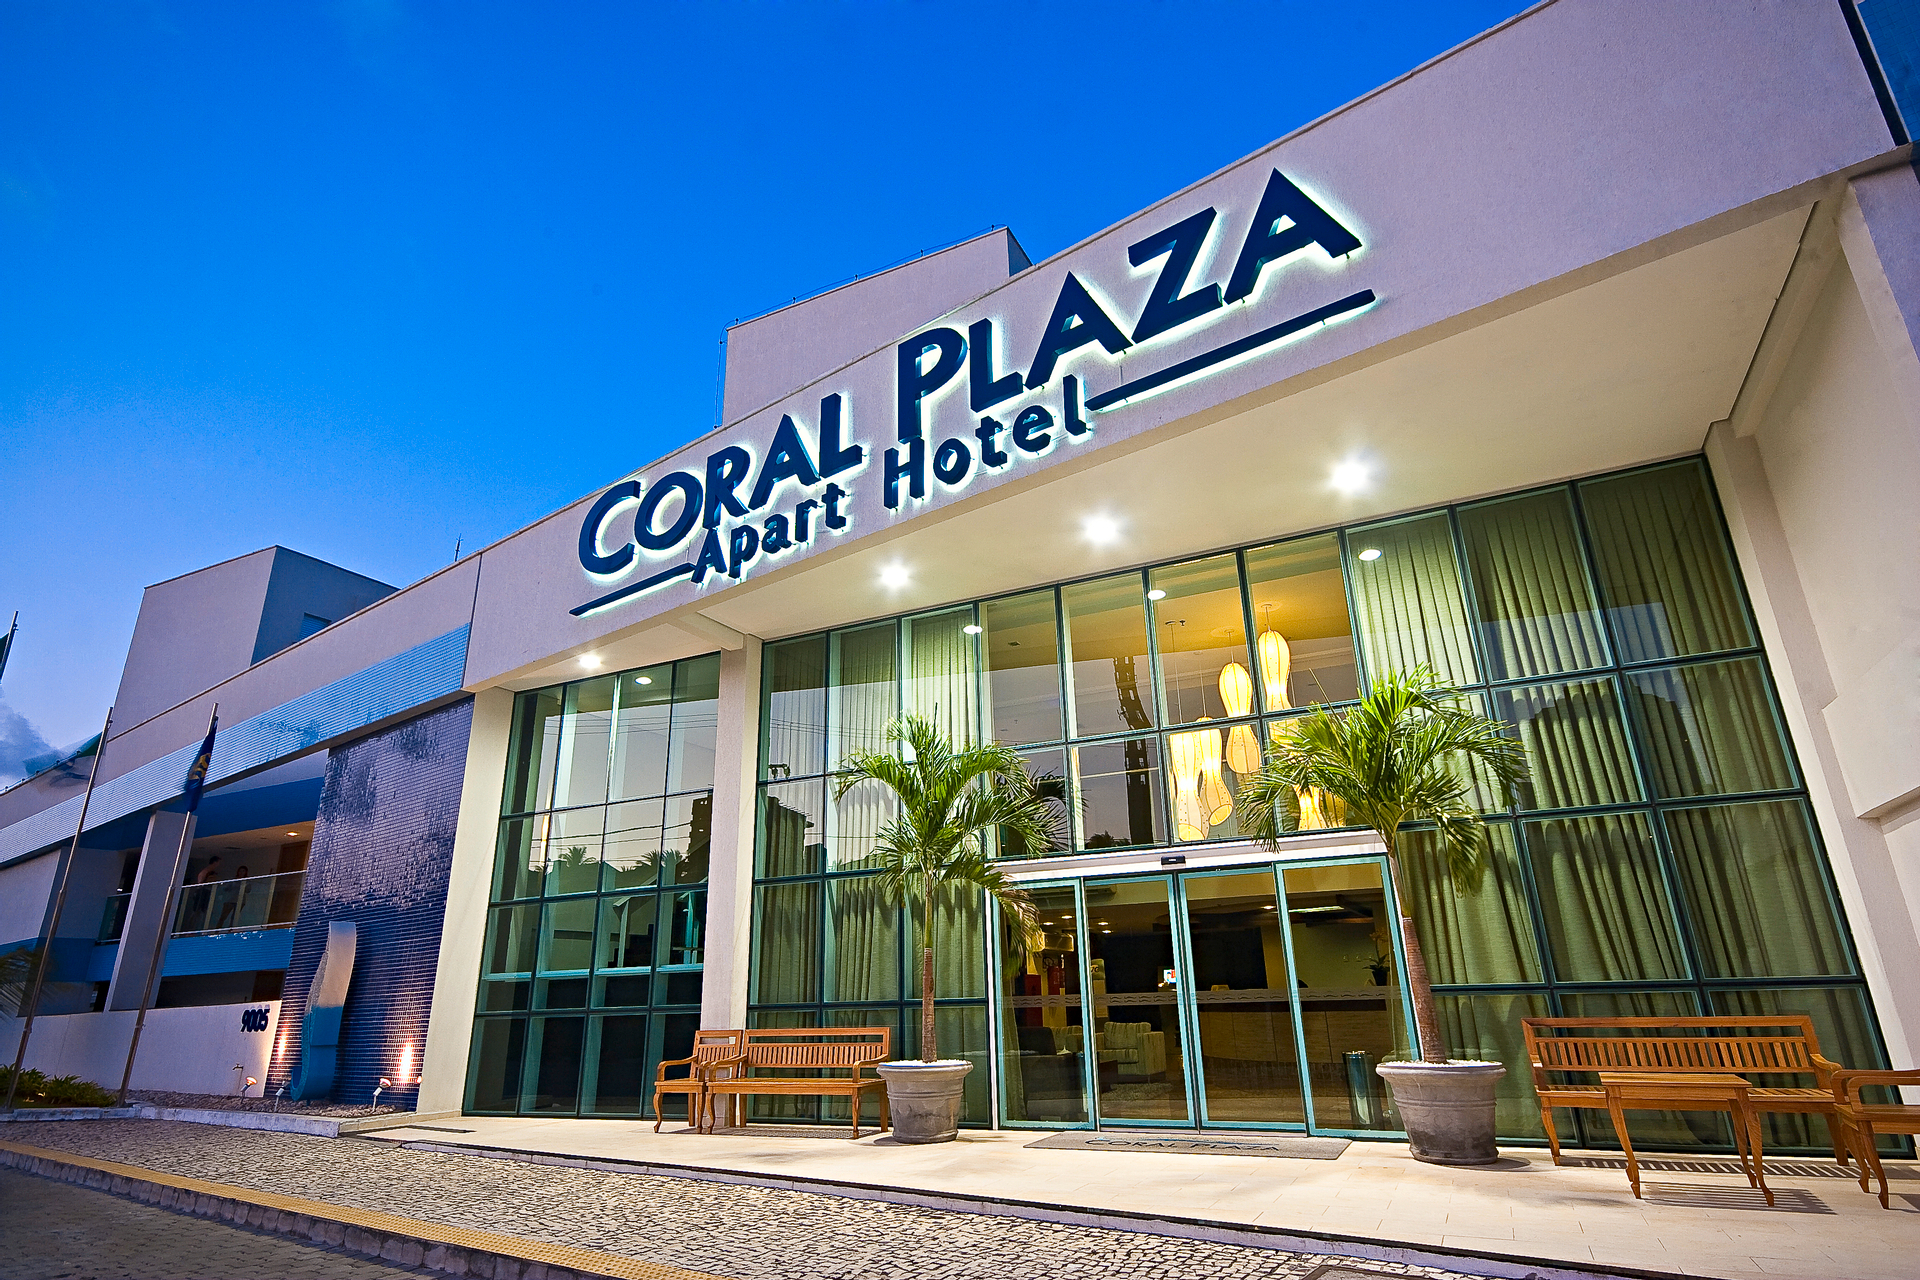 Coral Plaza Apart Hotel, Natal